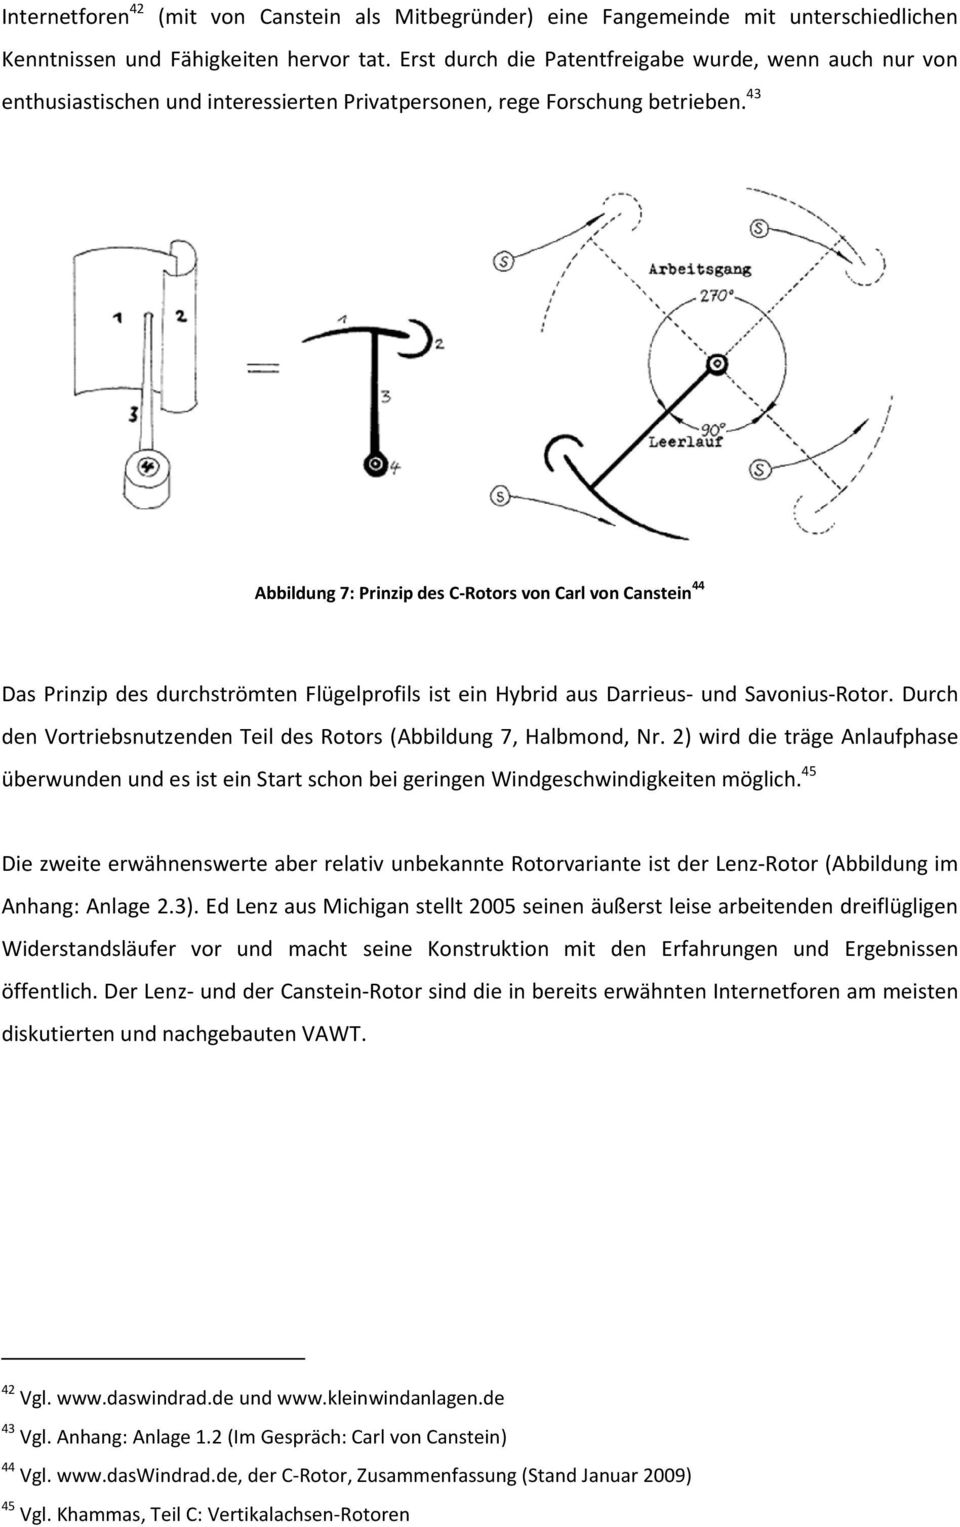 43 Abbildung 7: Prinzip des C-Rotors von Carl von Canstein 44 Das Prinzip des durchströmten Flügelprofils ist ein Hybrid aus Darrieus- und Savonius-Rotor.